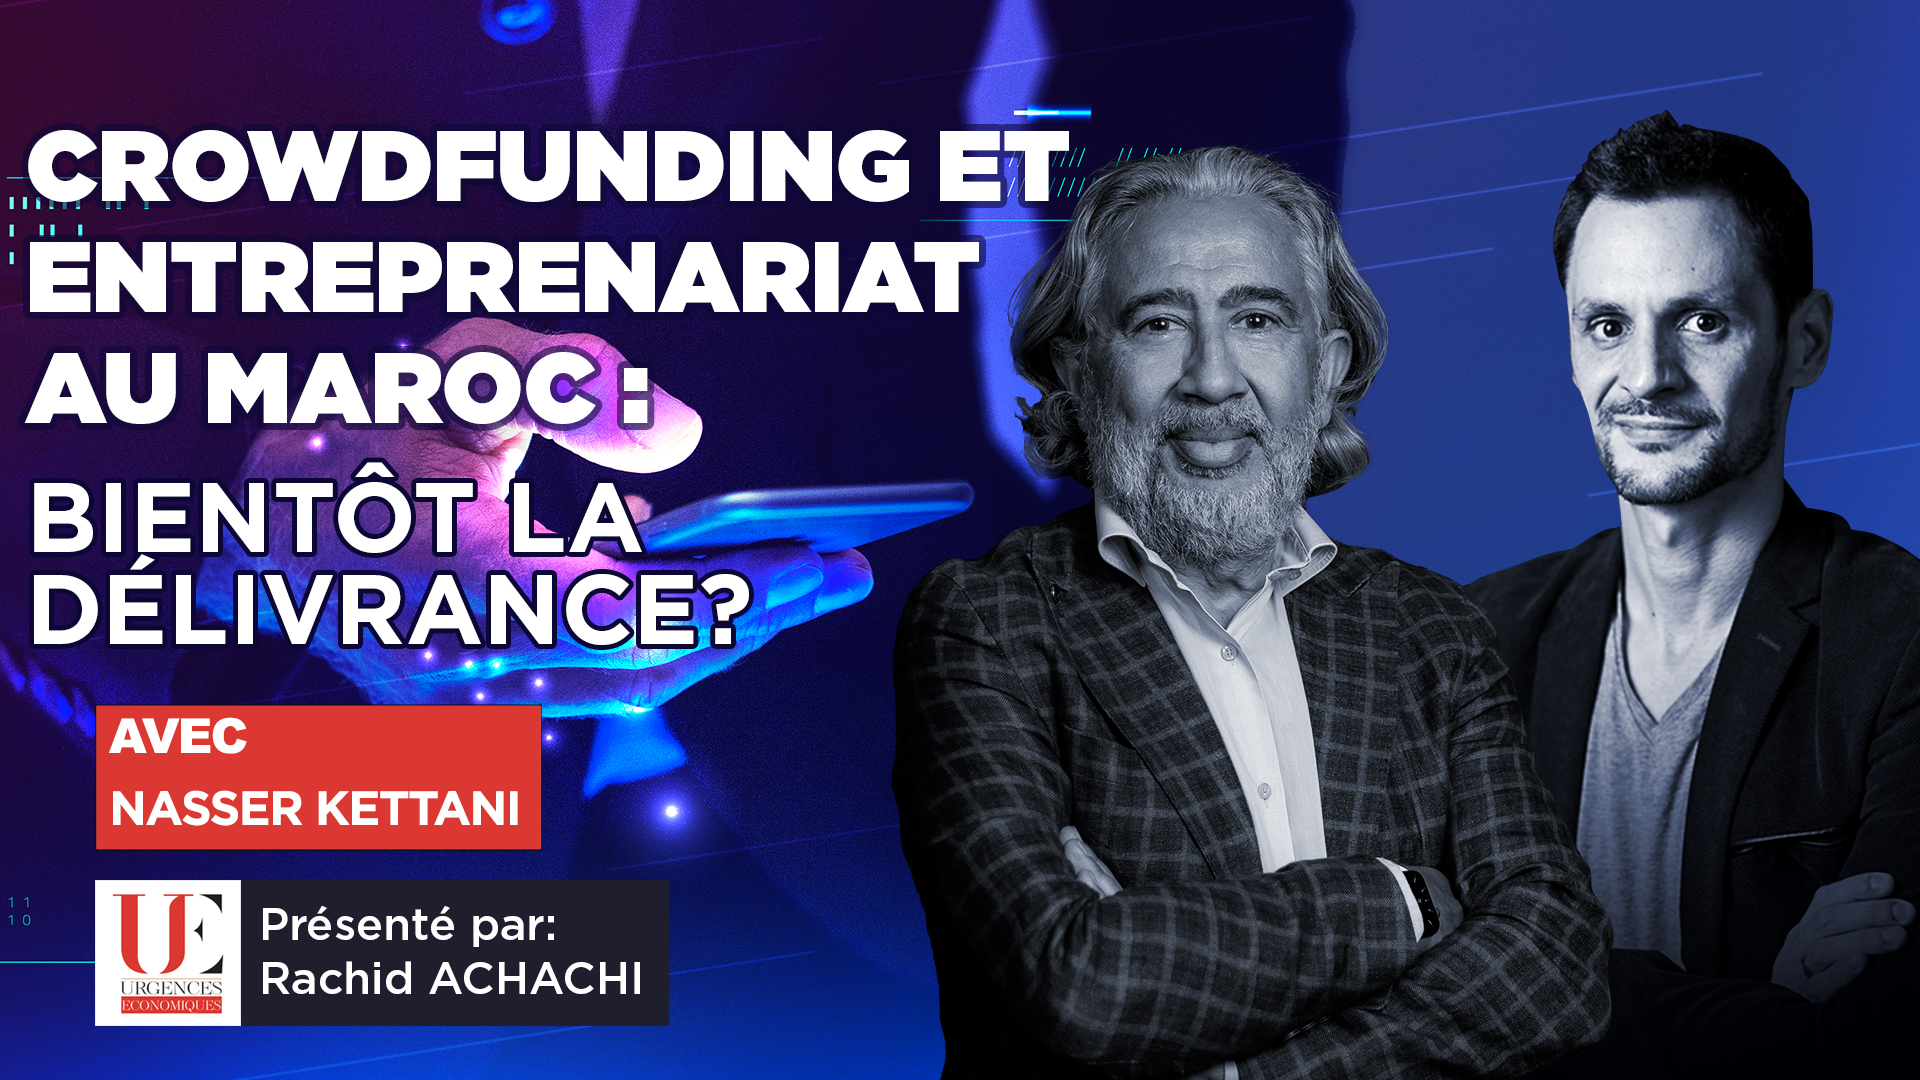 Crowdfunding et entreprenariat au Maroc: bientôt la délivrance ?